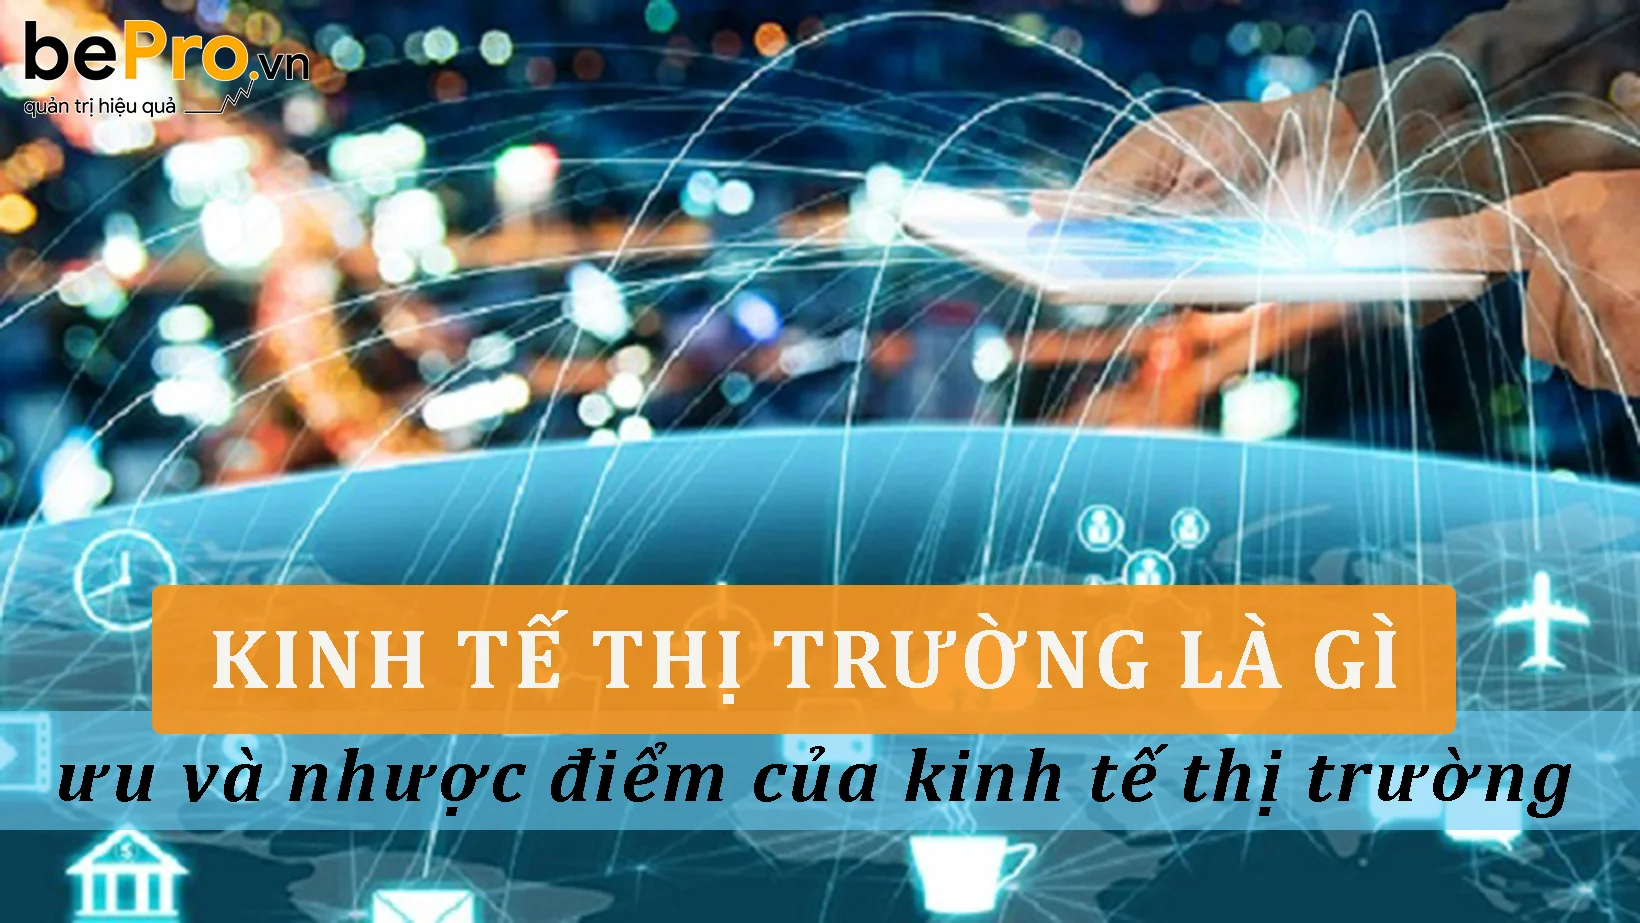 Vận dụng chủ nghĩa Mác  Lênin trong phát triển nền kinh tế thị trường định  hướng XHCN ở Việt Nam  Tạp chí Tài chính